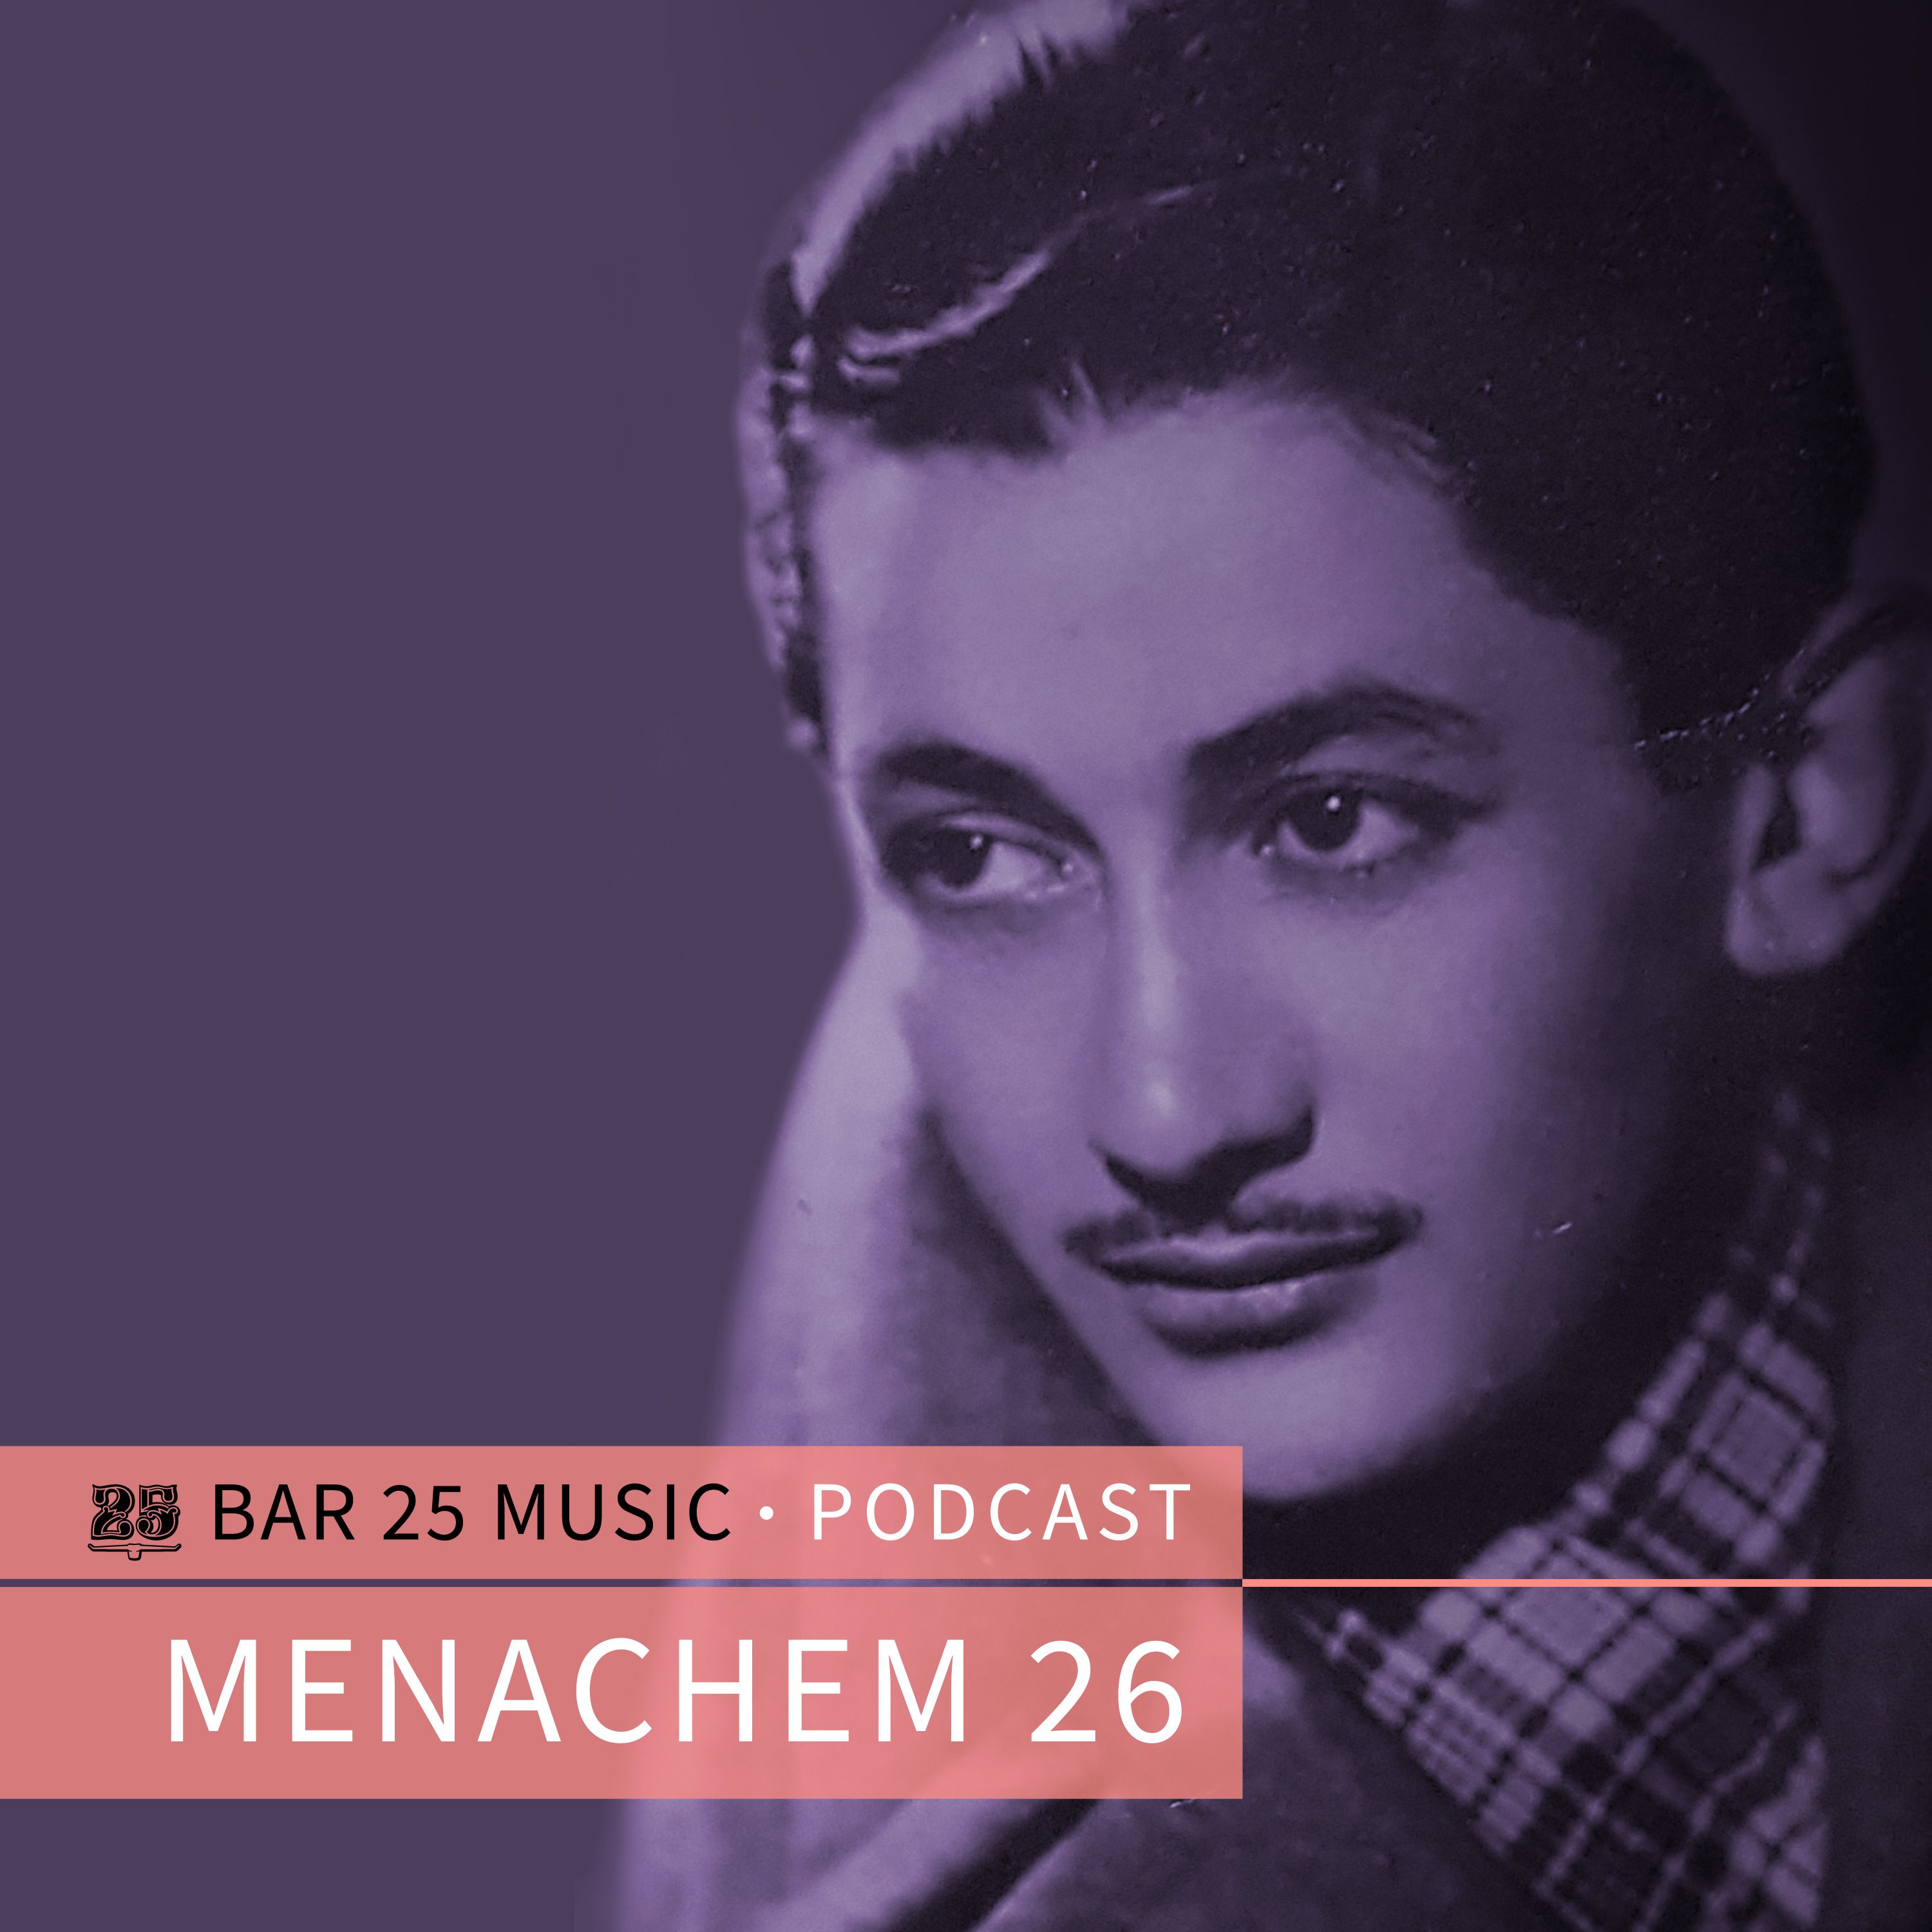 ဒေါင်းလုပ် Bar 25 Music Podcast #130 - Menachem 26